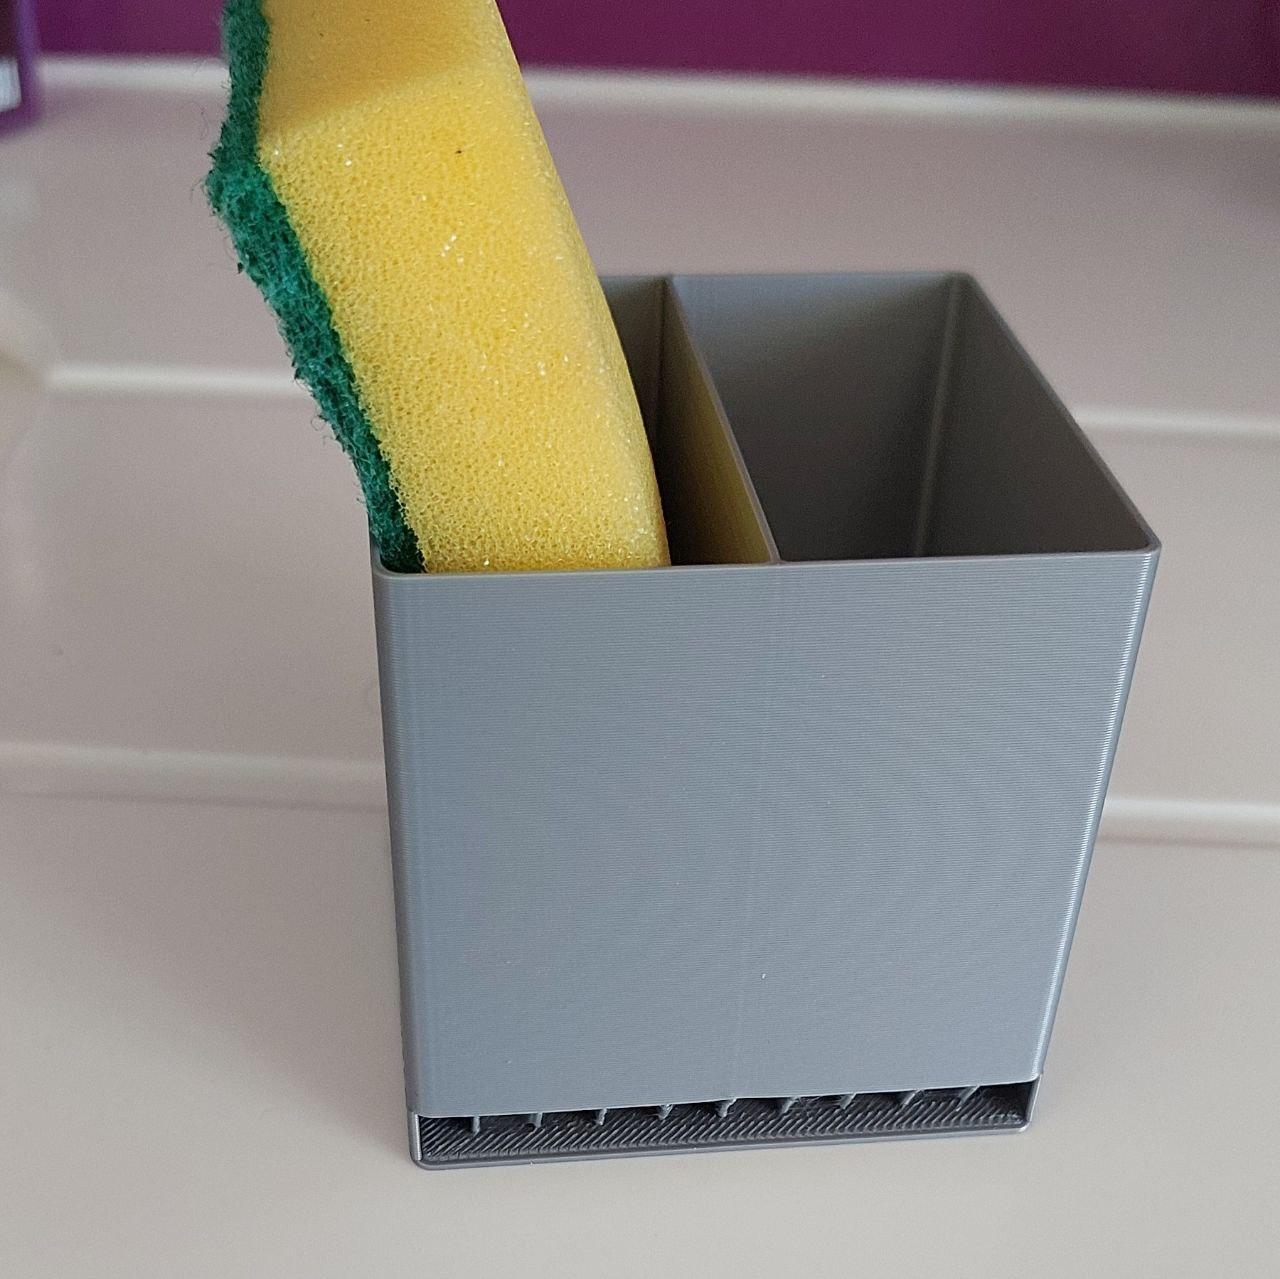 Sponge holder 3d model